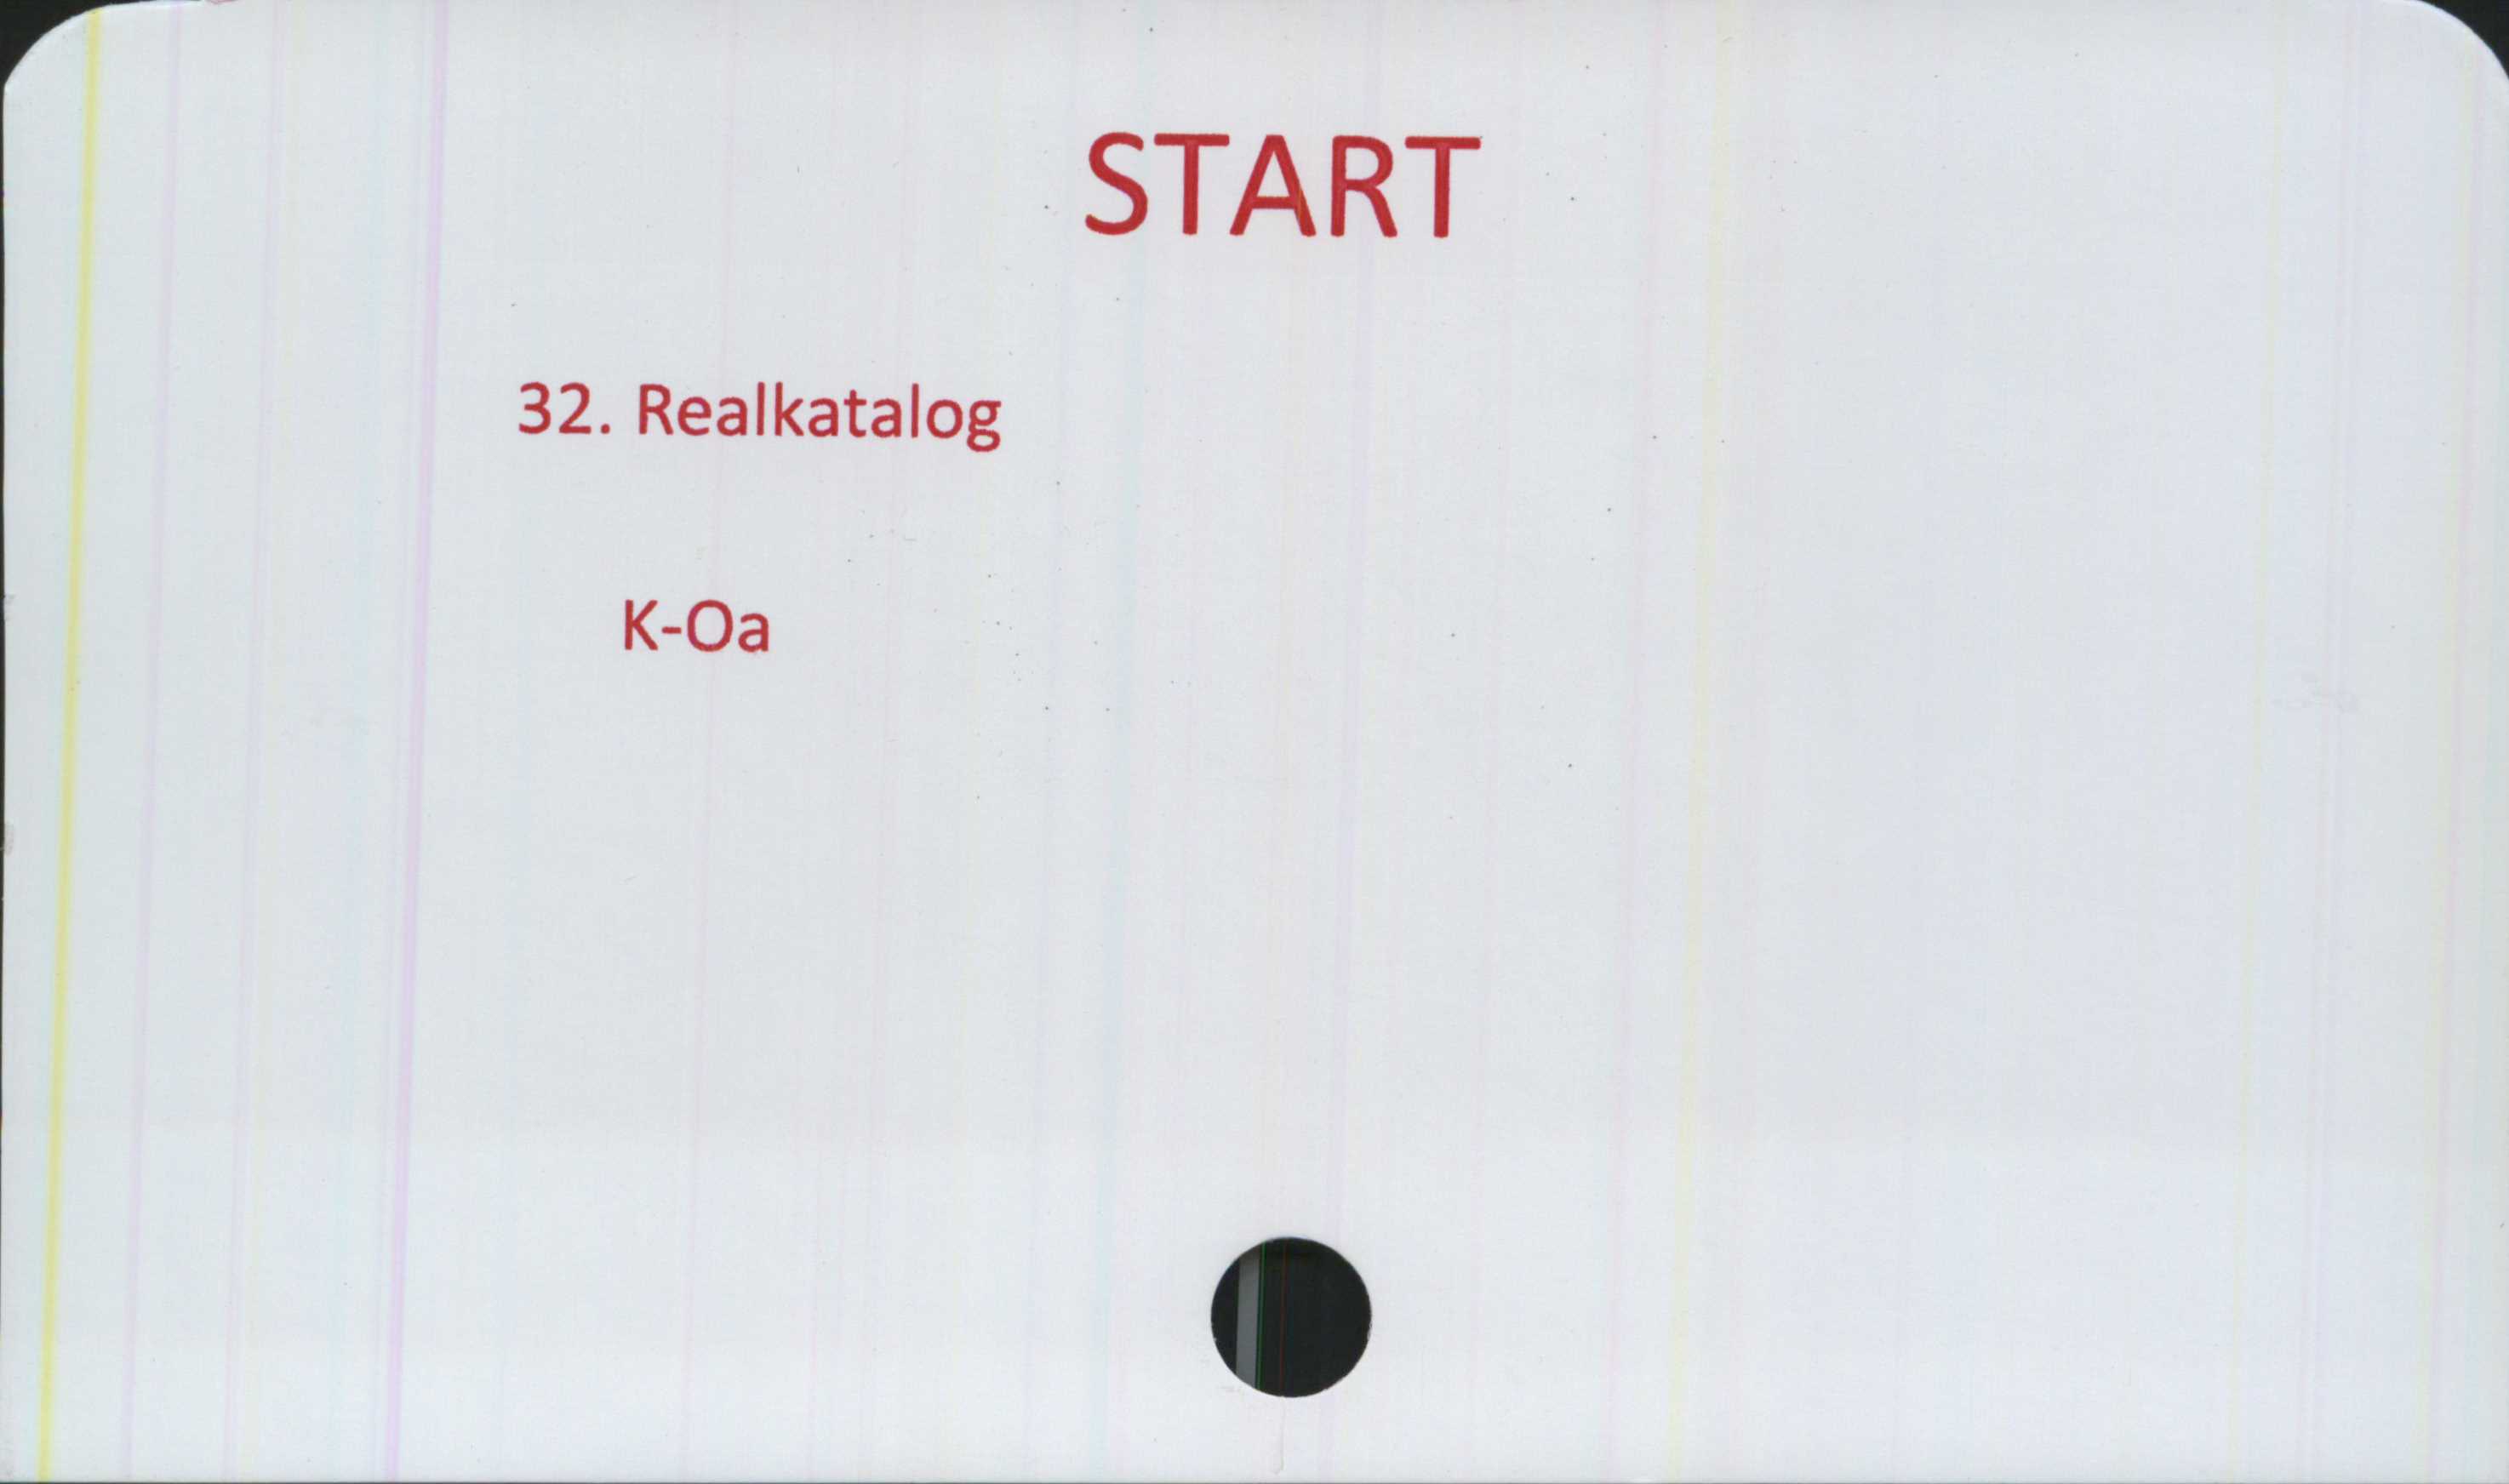  ﻿START

32. Realkatalog